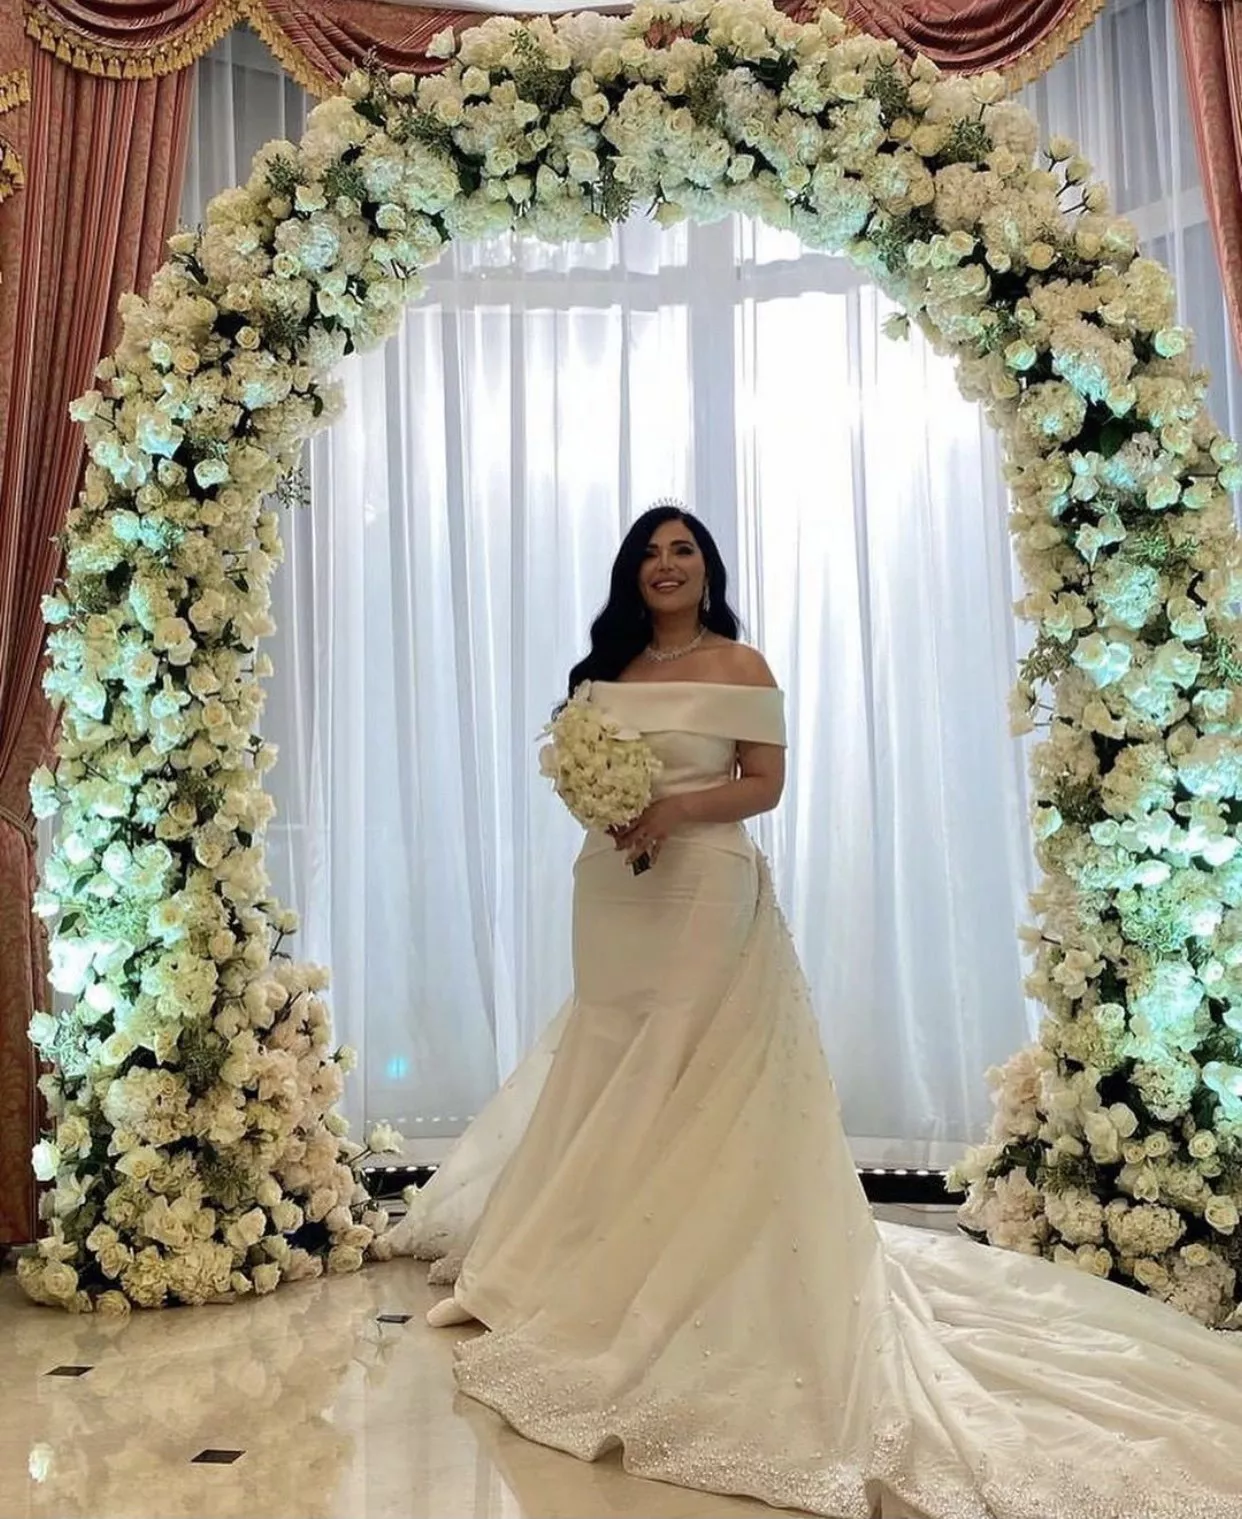 منى قطان تحتفل بزفافها في دبي بتاريخ مميز للغاية، وتختار فستانين مختلفين!